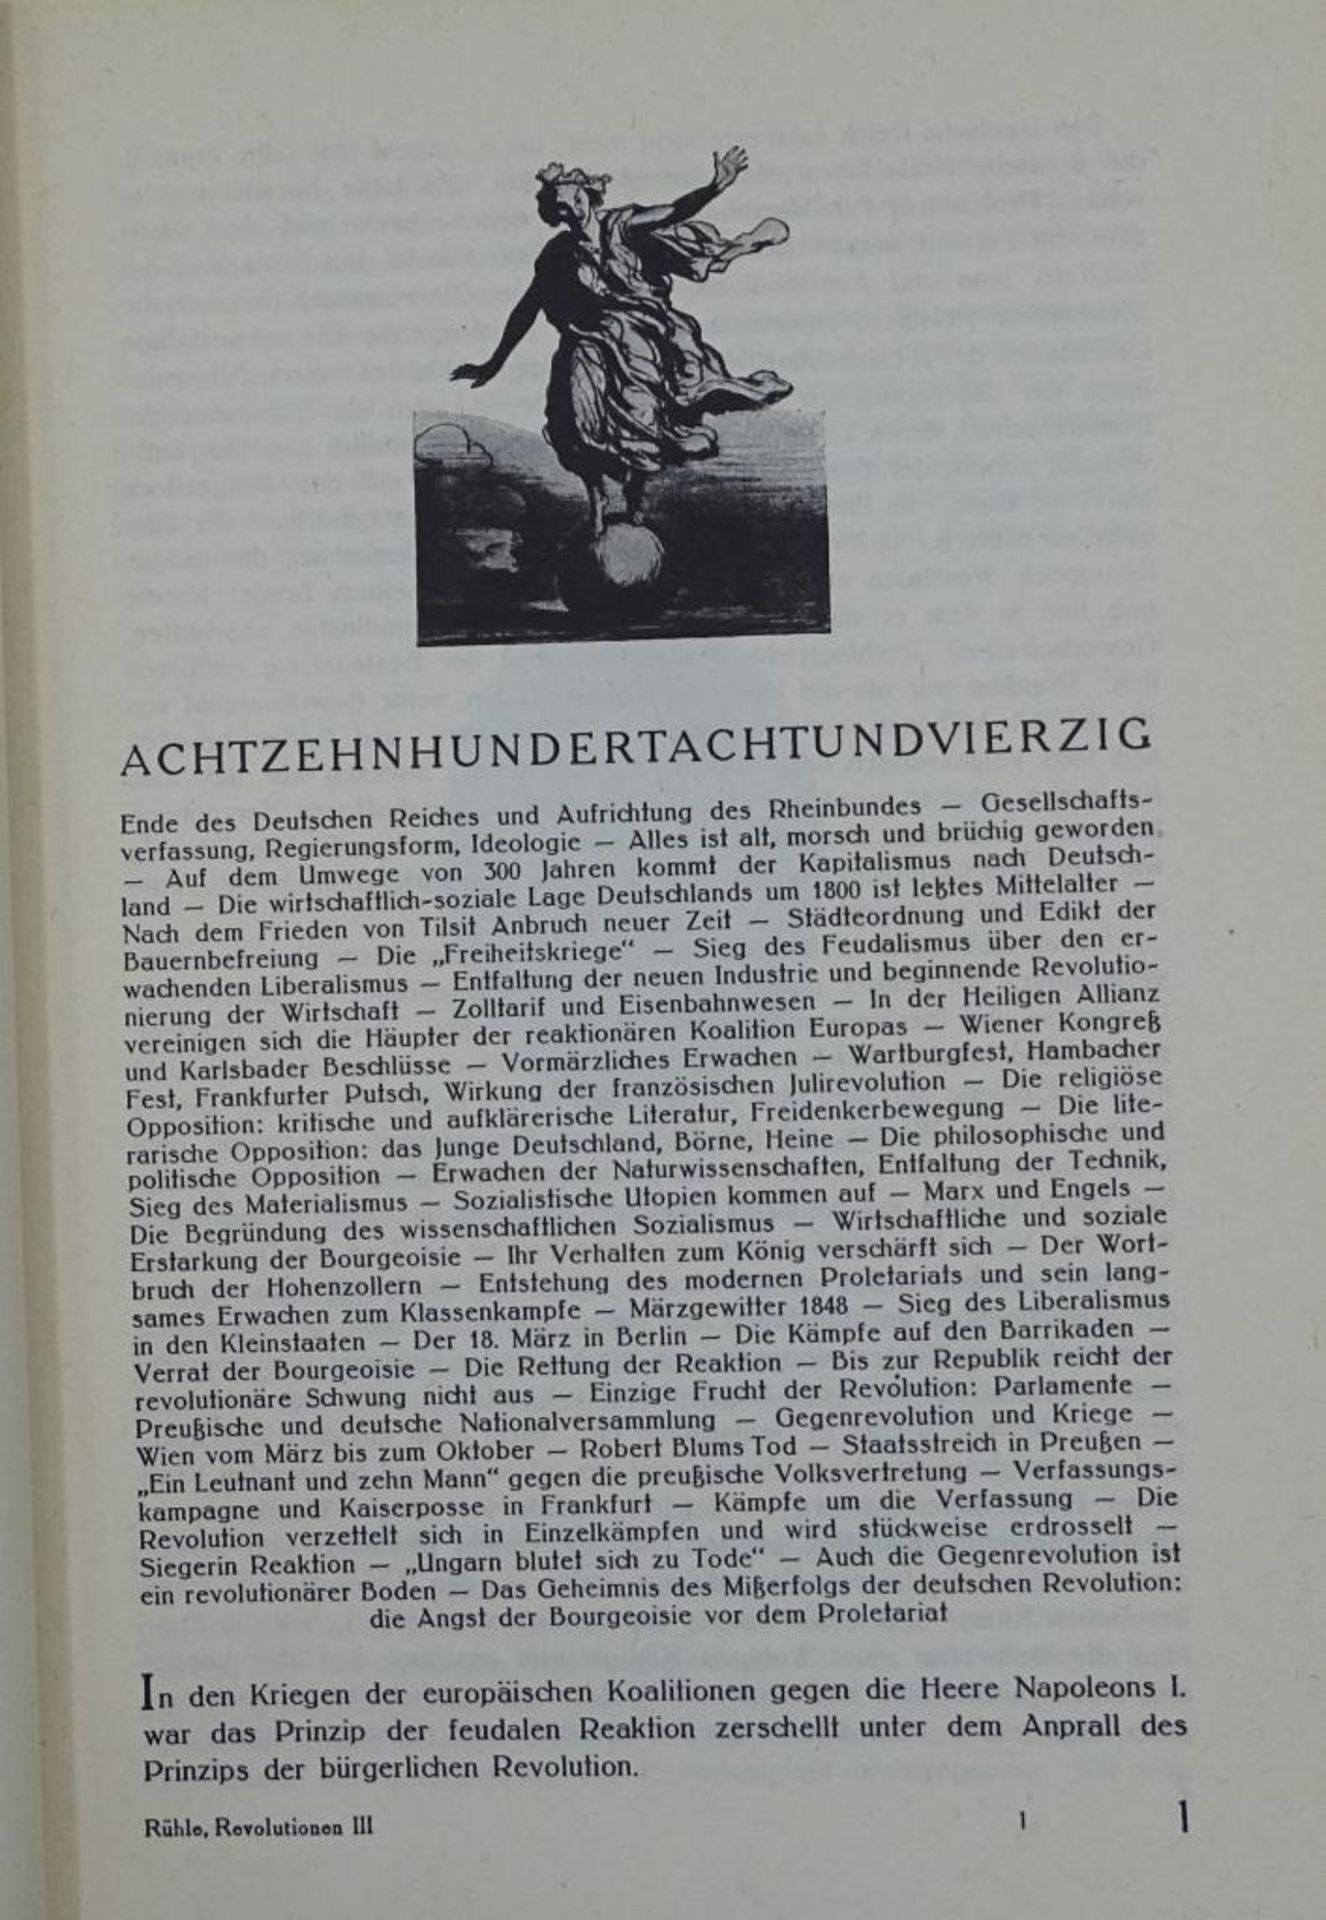 Die Revolutionen Europas von Otto Rühle,Focus Verlag, Wiesbaden 1973,Band I-II - Bild 4 aus 10